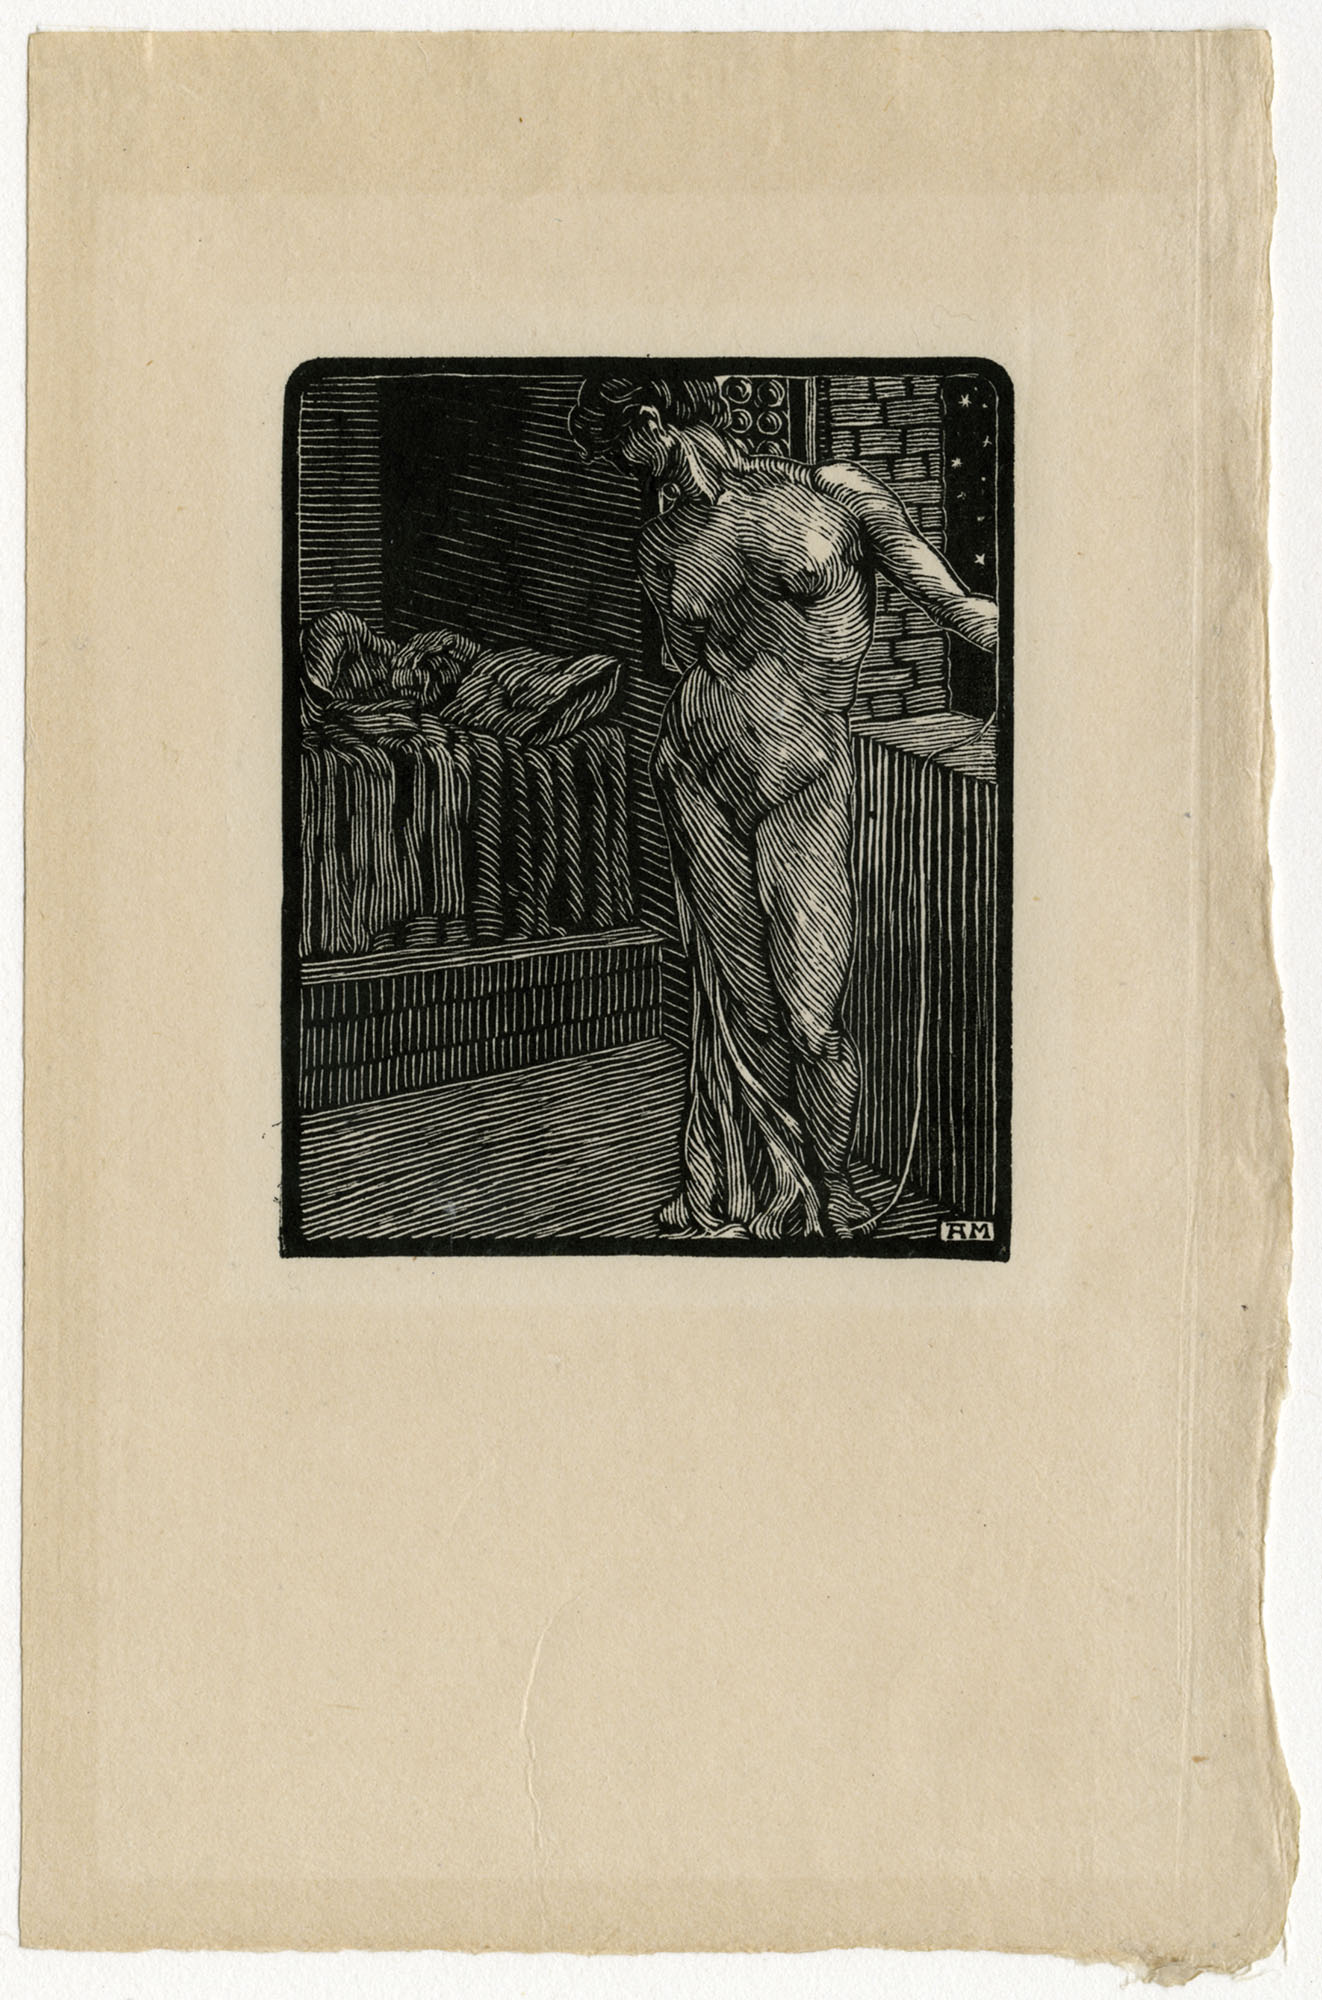 Novella ottava: Neifile, Illustrazioni per "Decamerone. Dioneo: giornata settima" (stampa, serie) di Moroni Antonello (primo quarto XX)